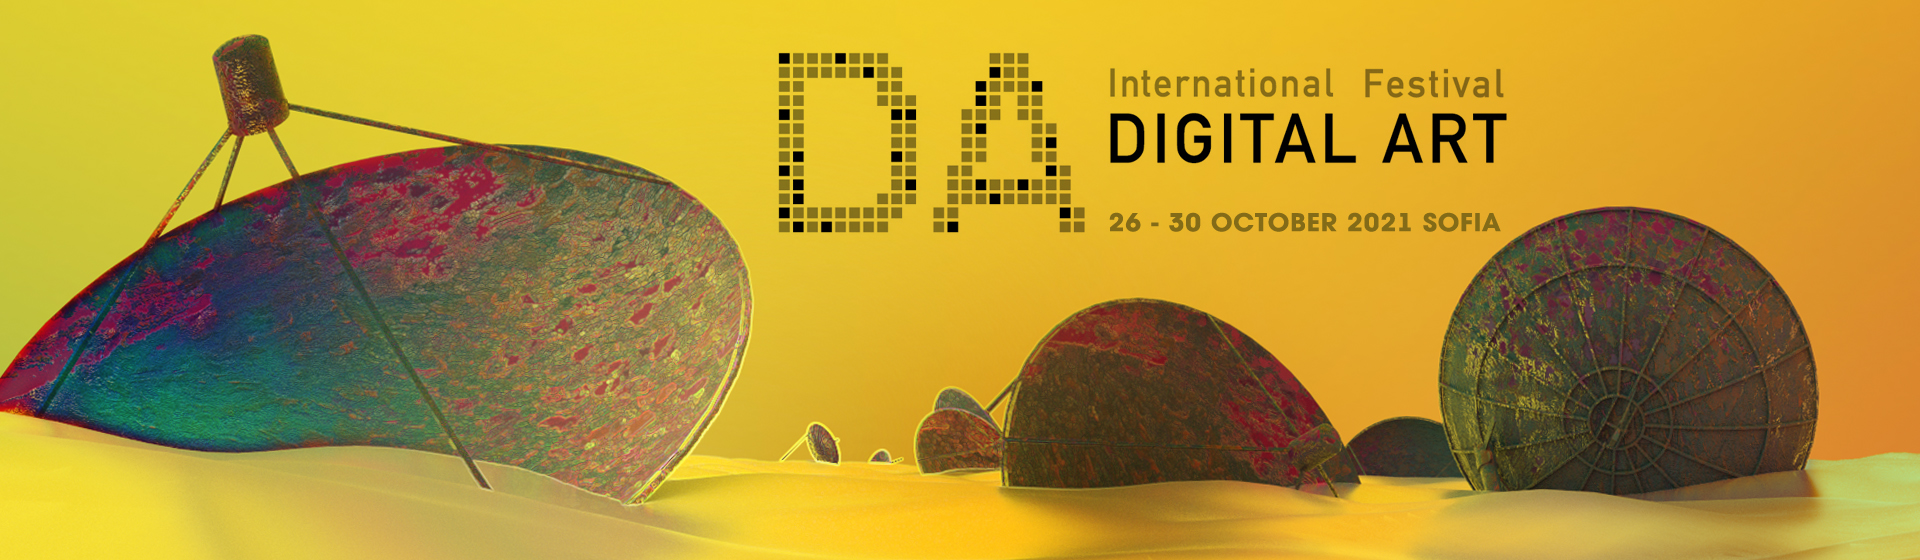 Осми Международен фестивал за дигитални изкуства, София